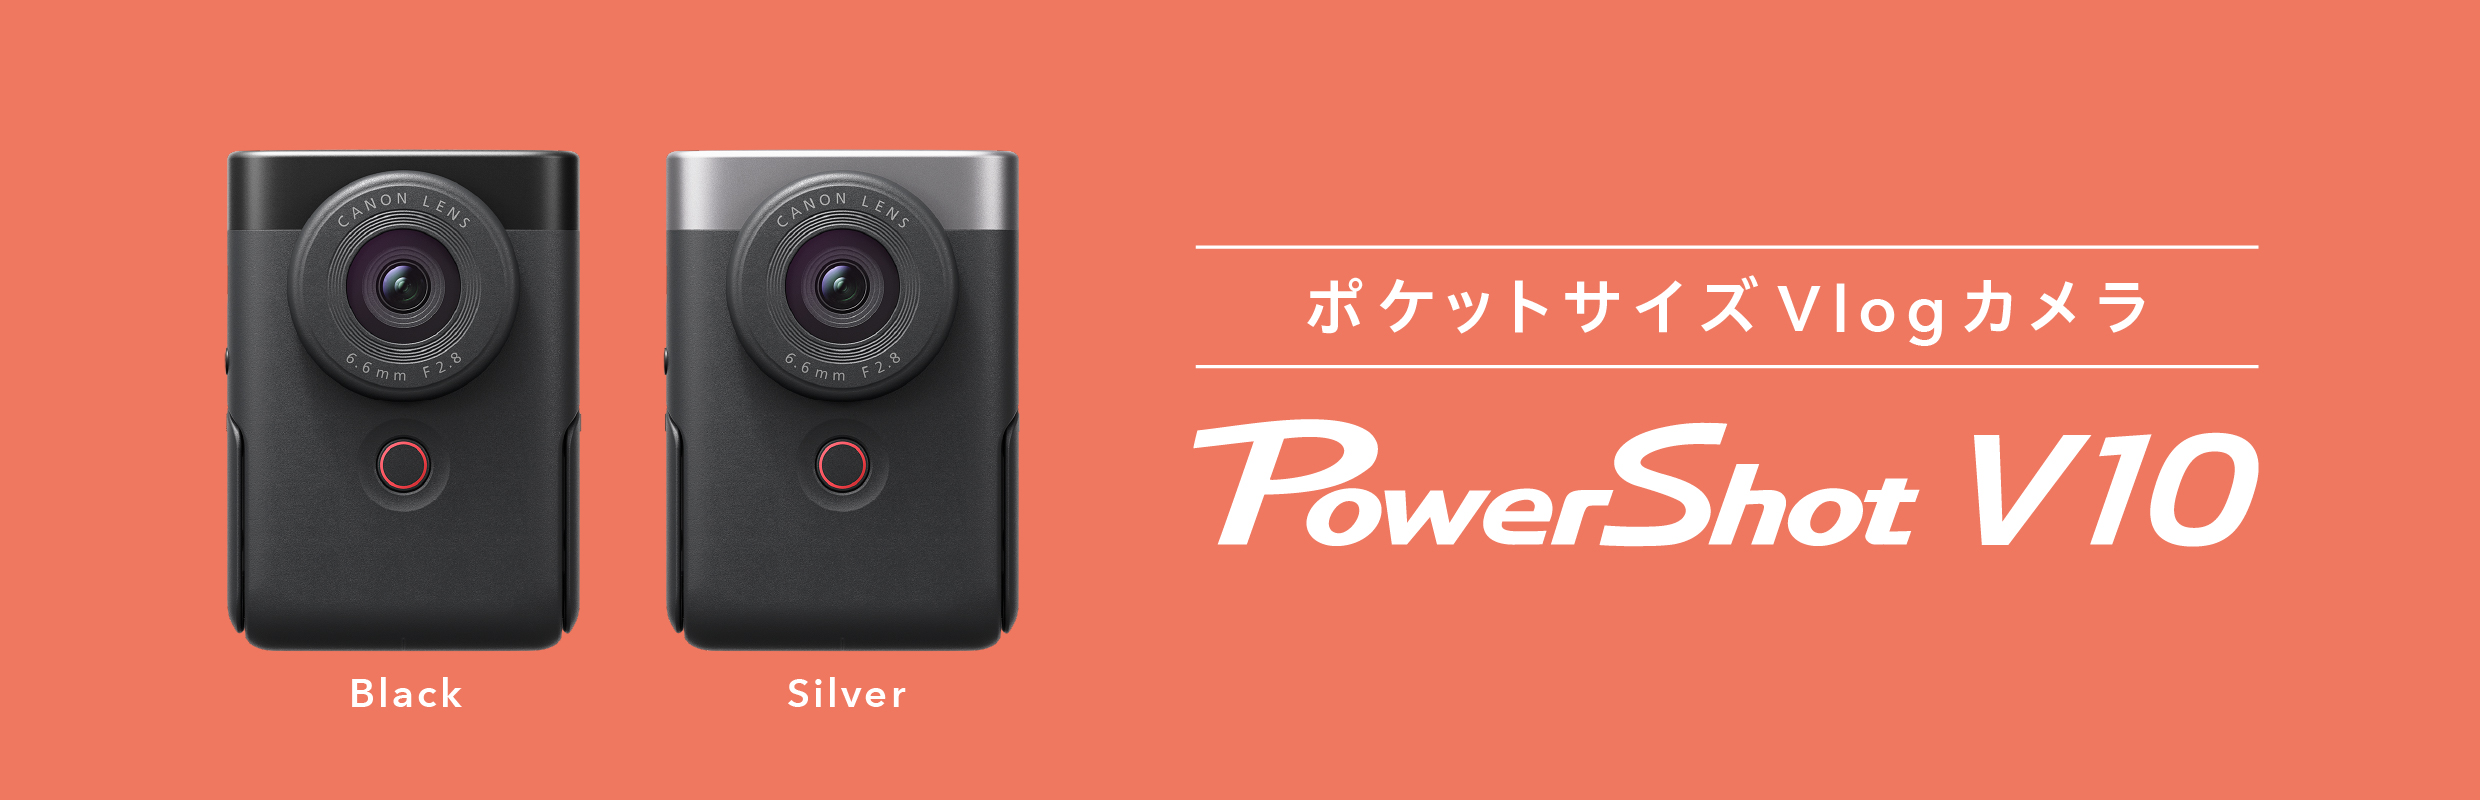 Canon デジカメ コンパクト デジタルカメラ PowerShot V10 イクシー